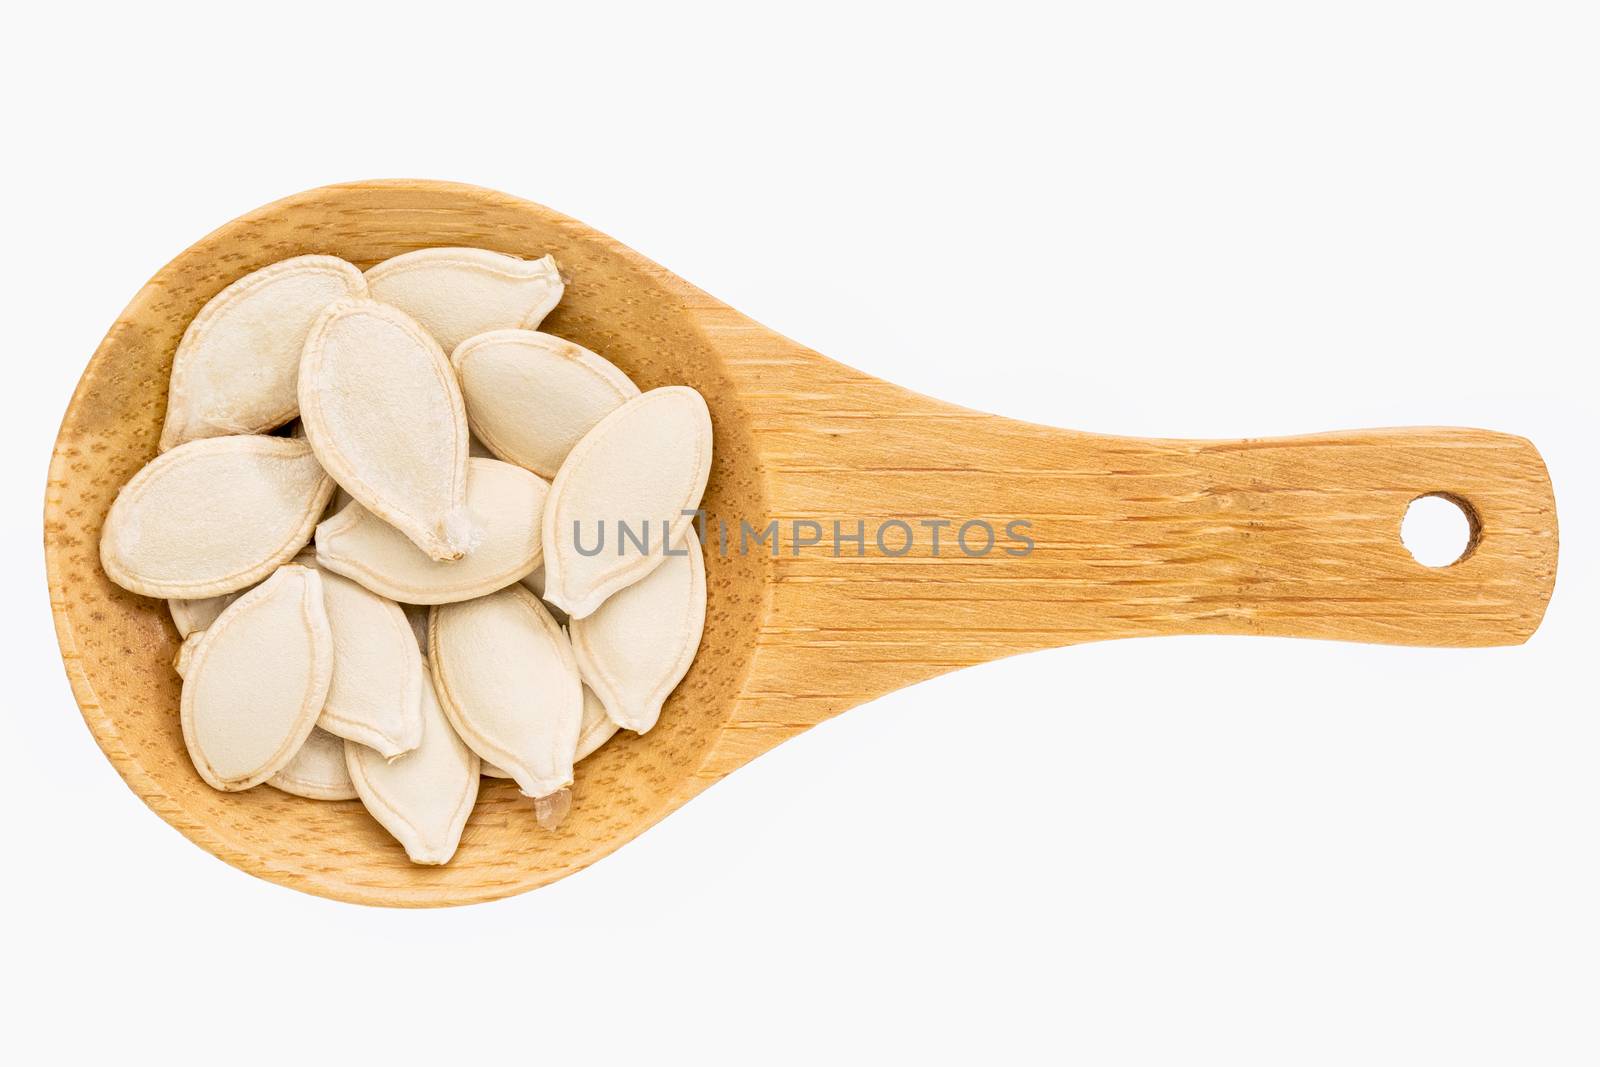 pumpkin seeds on wooden spoon by PixelsAway